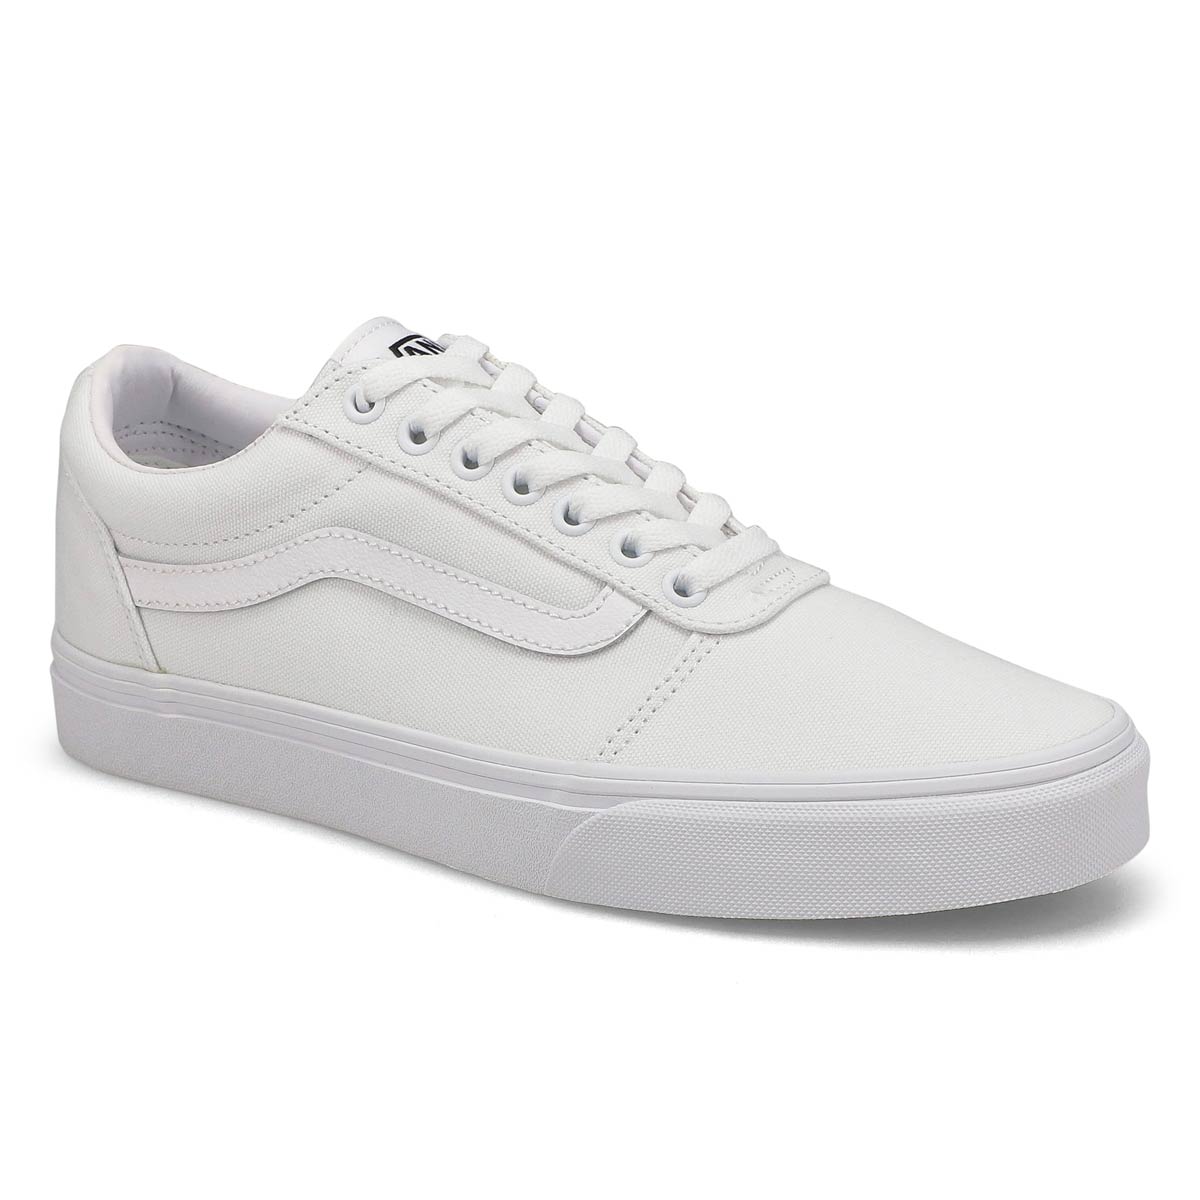 Vans Men's Ward Sneaker - White/White 